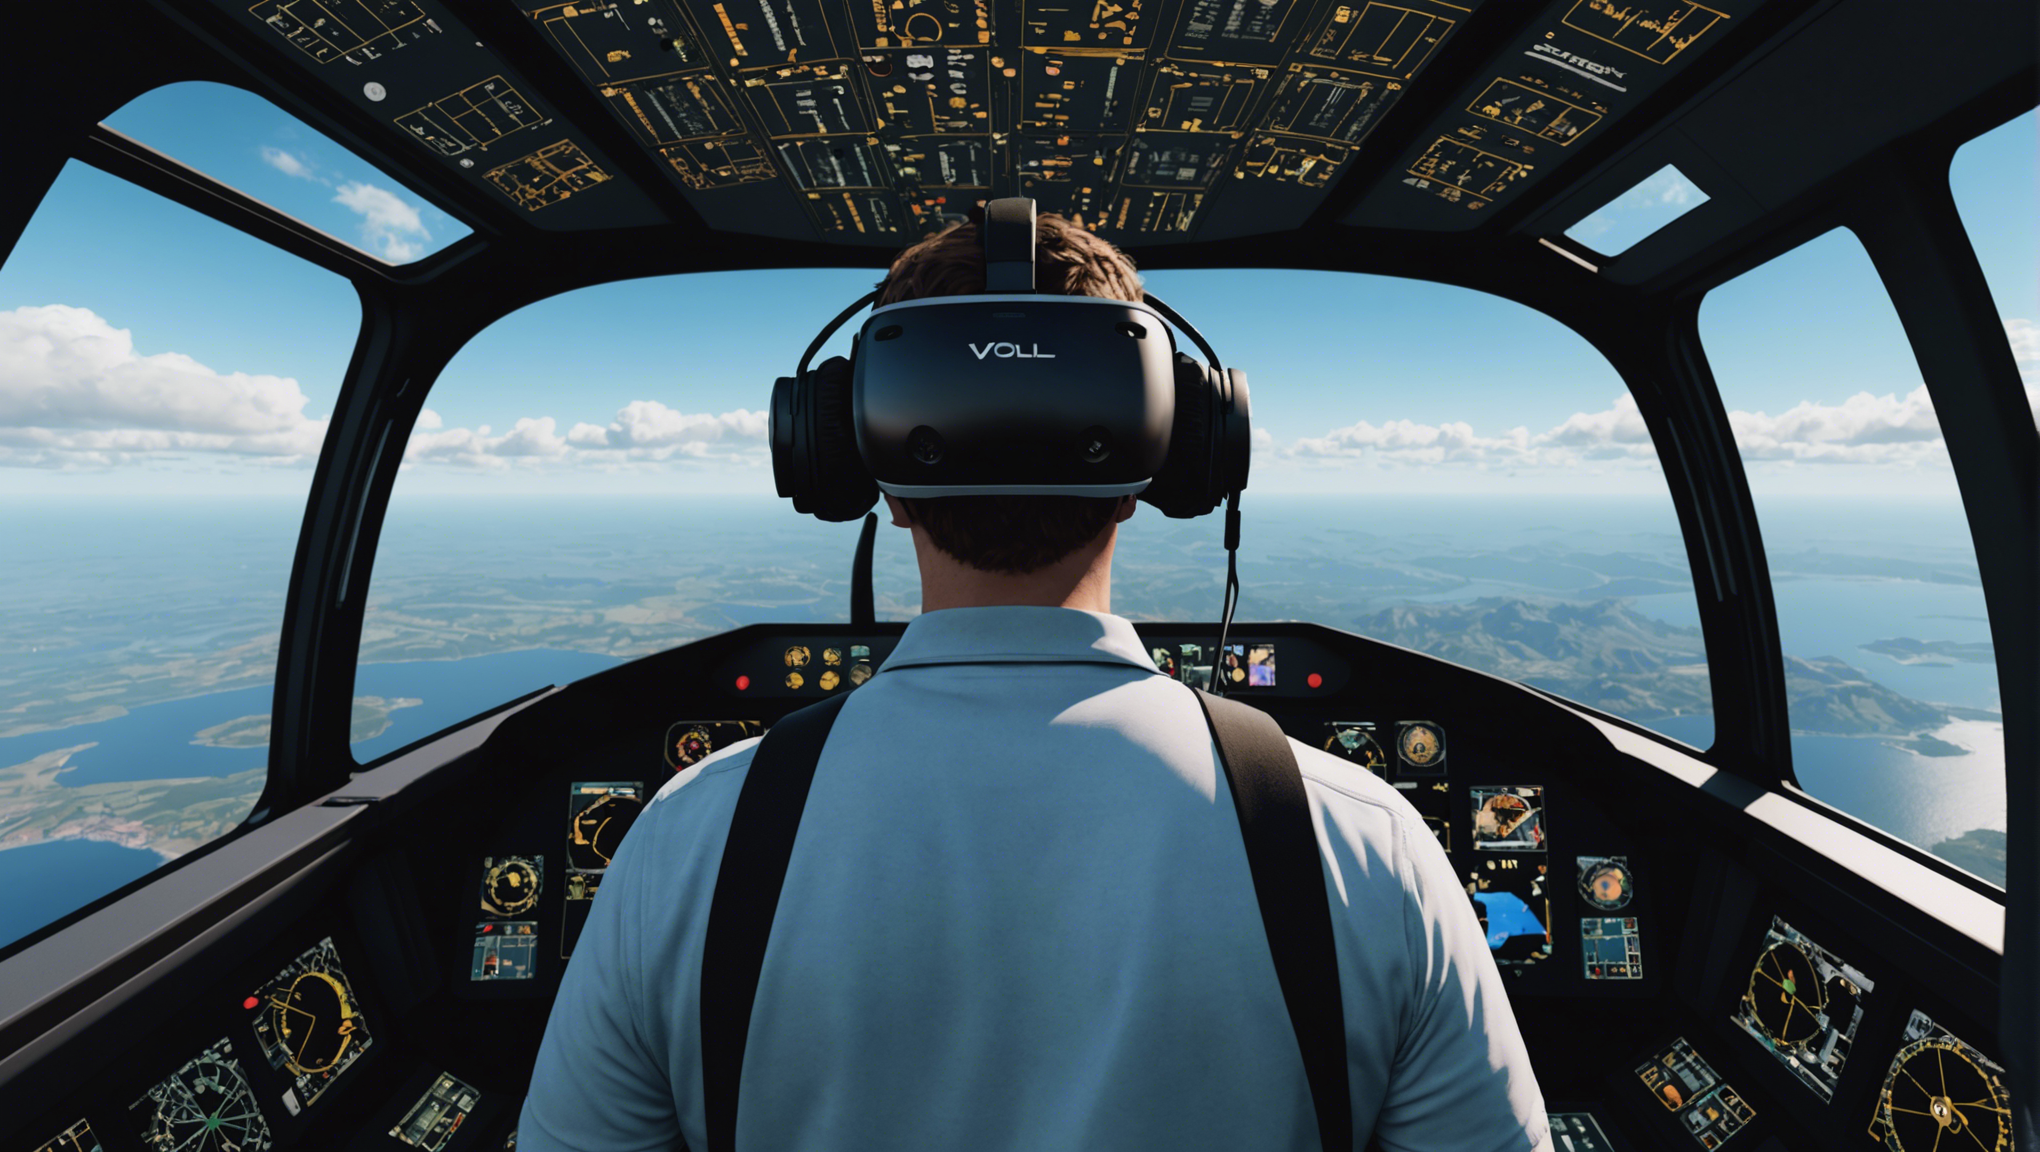 découvrez une expérience immersive de vol inégalée avec l'animation vr vol flight simulator. pilotez virtuellement des avions et ressentez la véritable sensation de vol. plongez dans une aventure aérienne captivante grâce à la réalité virtuelle.